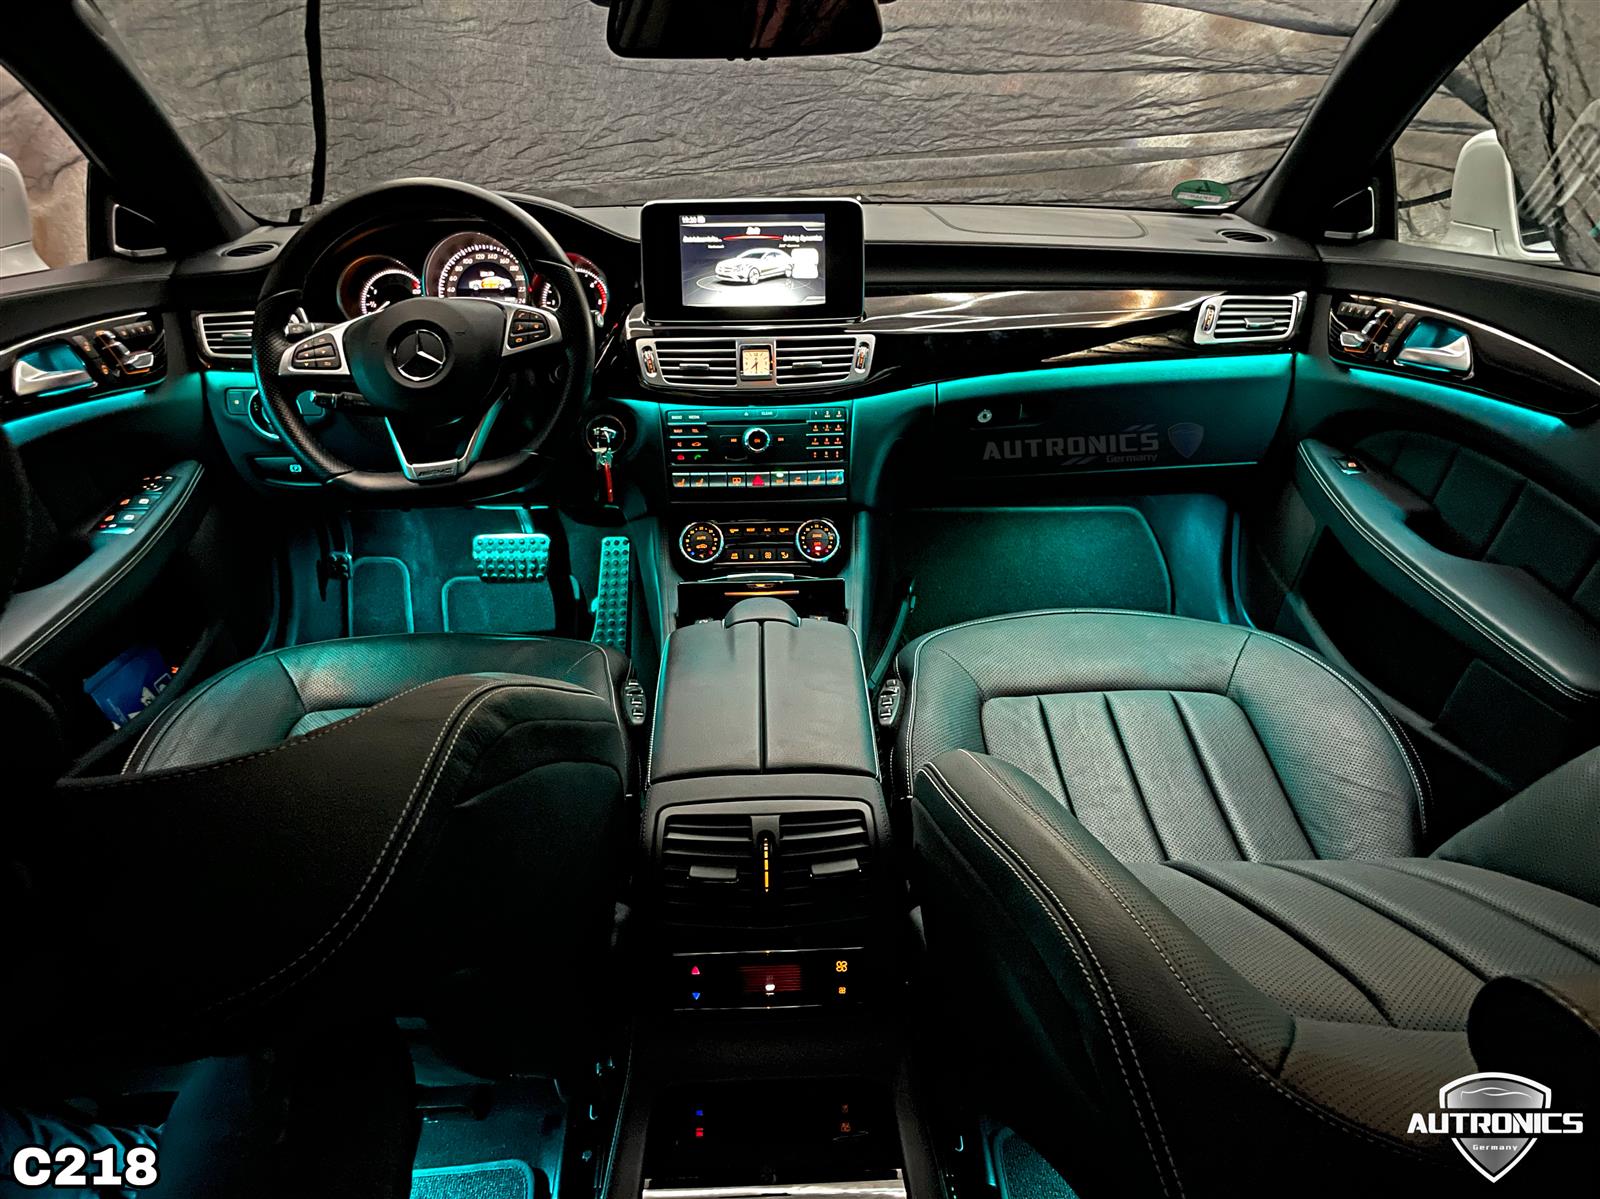 Ambientebeleuchtung Nachrüsten im Auto Beleuchtung Ambiente geeignet für Mercedes Benz E Klasse W212 & CLS Klasse W218 - 01